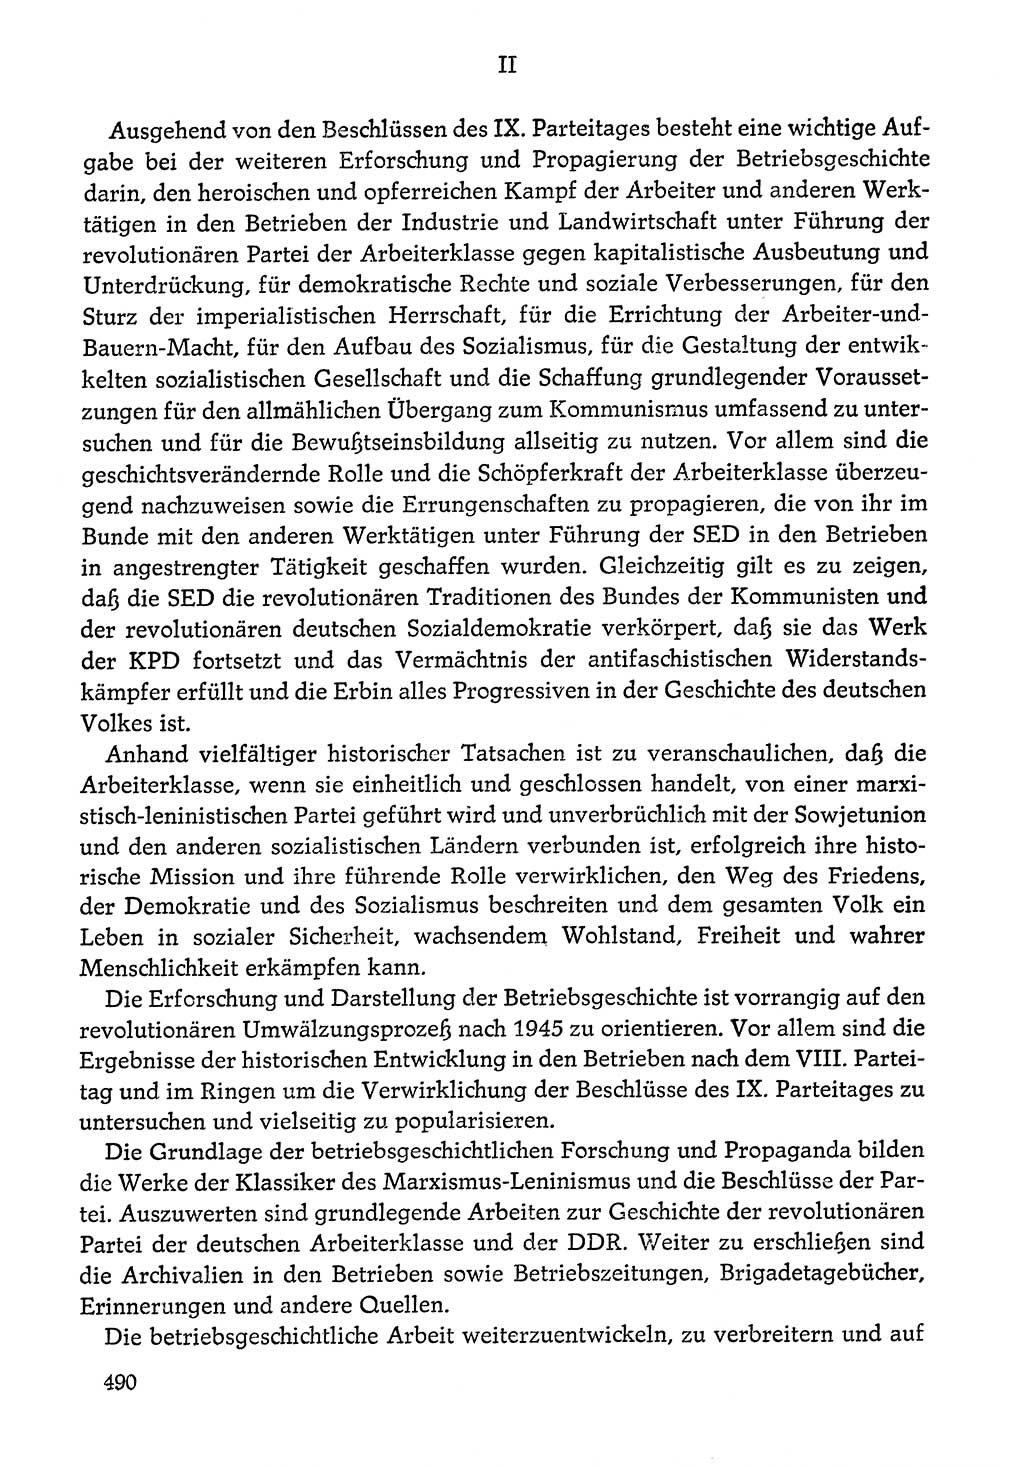 Dokumente der Sozialistischen Einheitspartei Deutschlands (SED) [Deutsche Demokratische Republik (DDR)] 1976-1977, Seite 490 (Dok. SED DDR 1976-1977, S. 490)